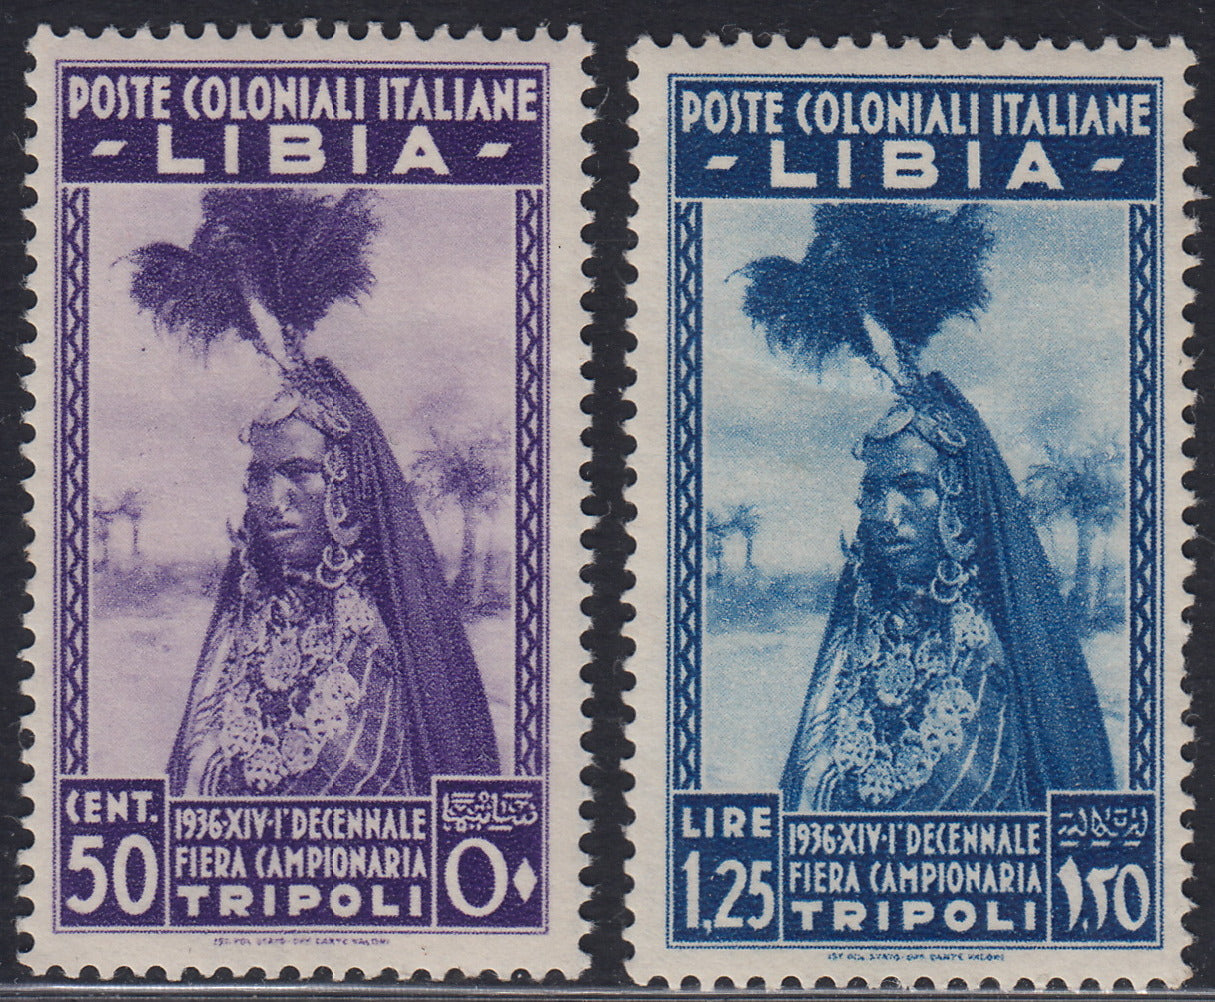 Libia11 - 1936 - Decima fiera di Tripoli, serie completa di 2 valori nuova con gomma originale (138/139)